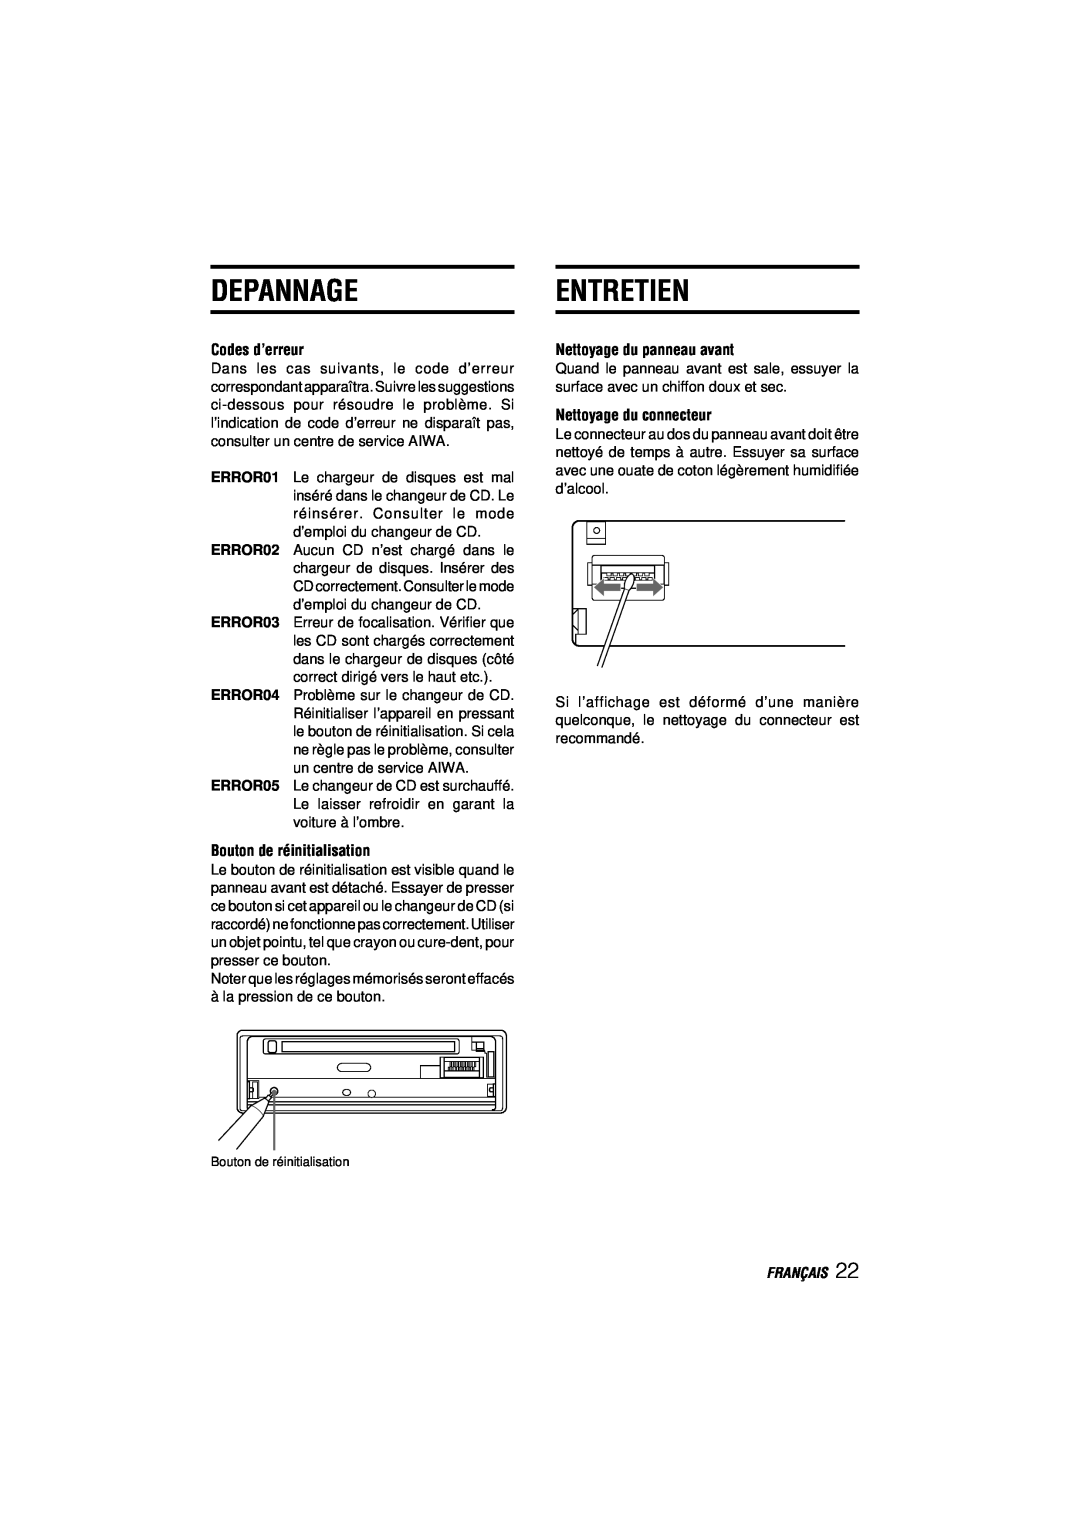 Aiwa CDC-MP3 manual Depannageentretien, Codes d’erreur, Bouton de réinitialisation, Nettoyage du panneau avant, Français 